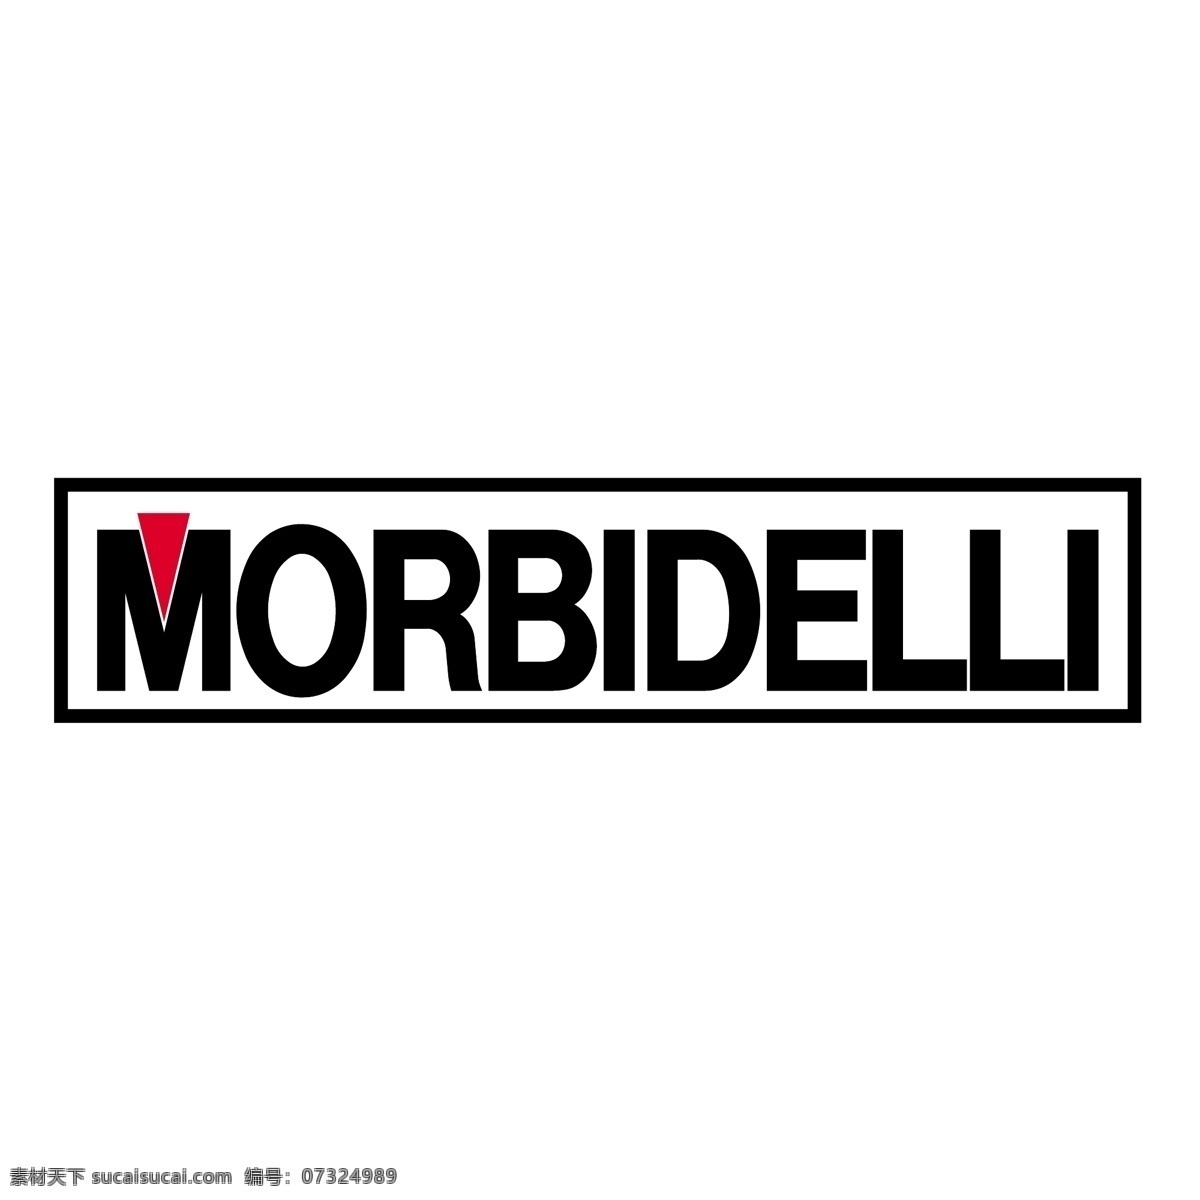 m莫尔比代利 矢量标志下载 免费矢量标识 商标 品牌标识 标识 矢量 免费 品牌 公司 白色